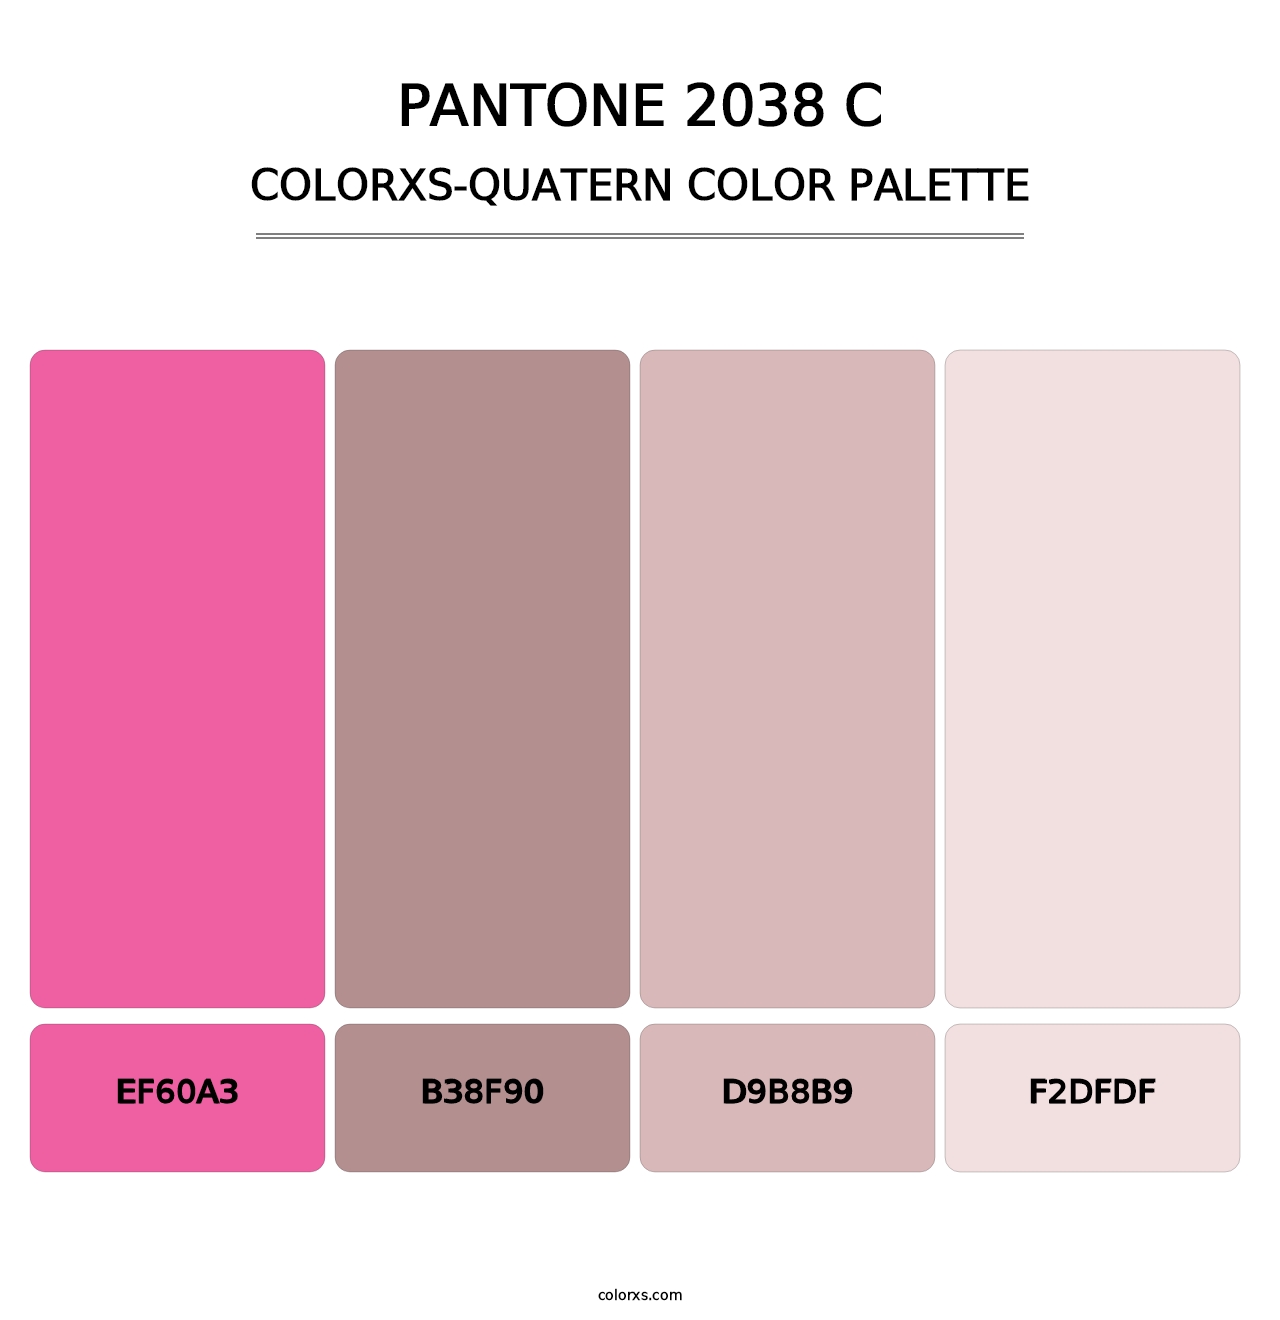 PANTONE 2038 C - Colorxs Quatern Palette